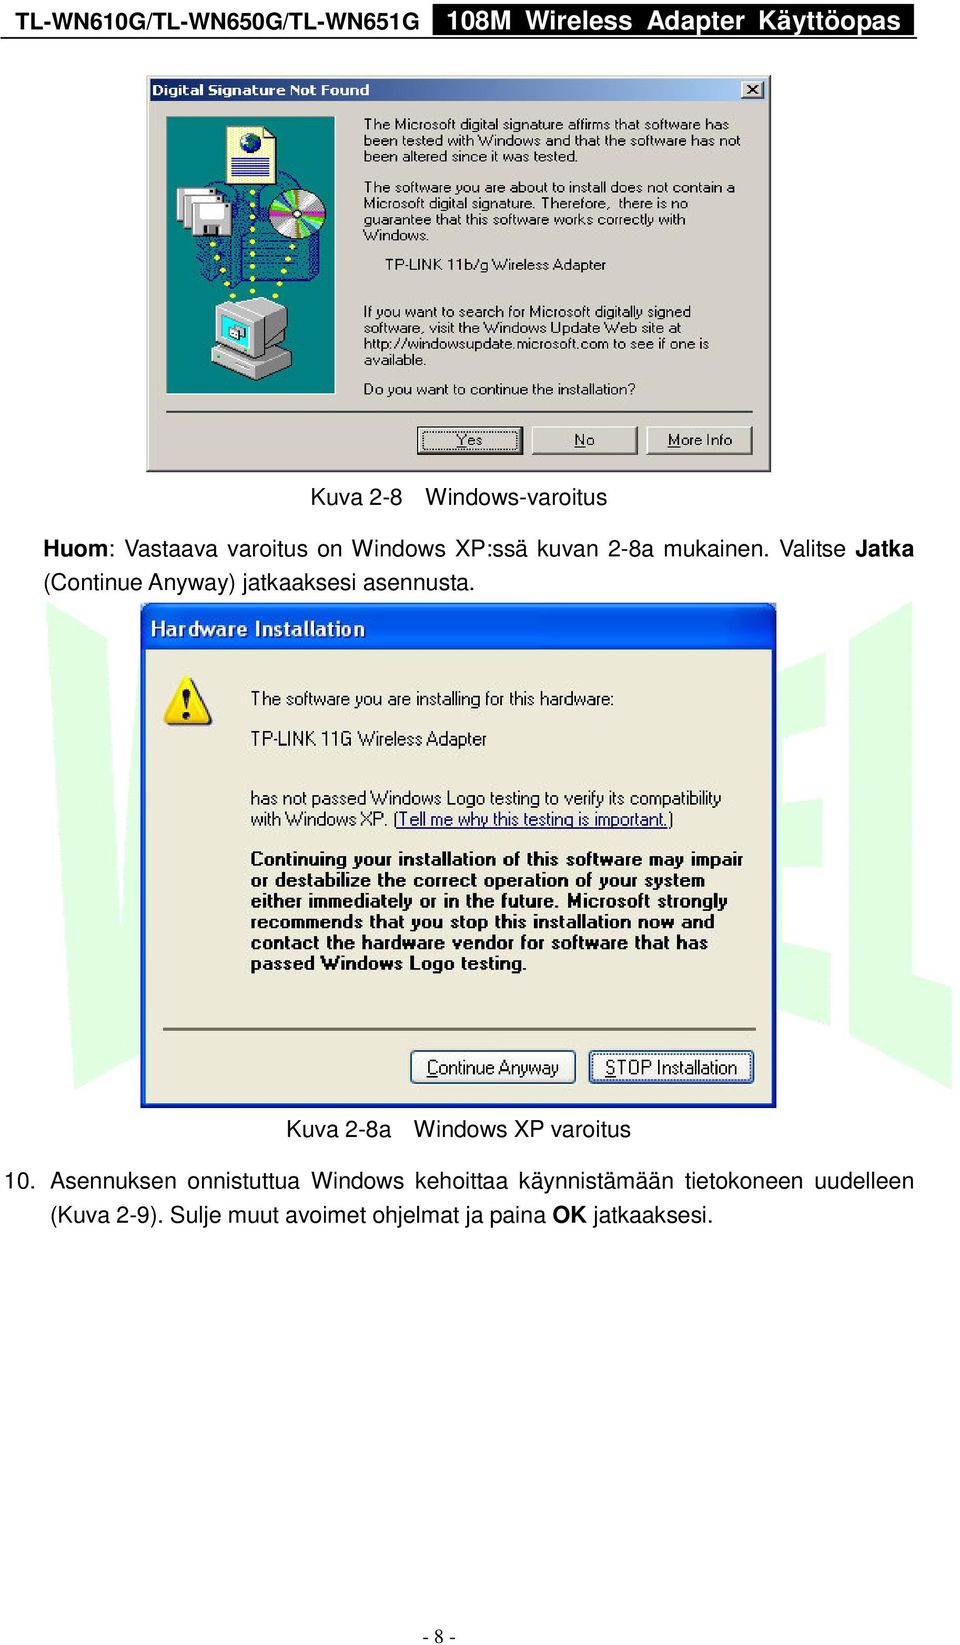 Kuva 2-8a Windows XP varoitus 10.